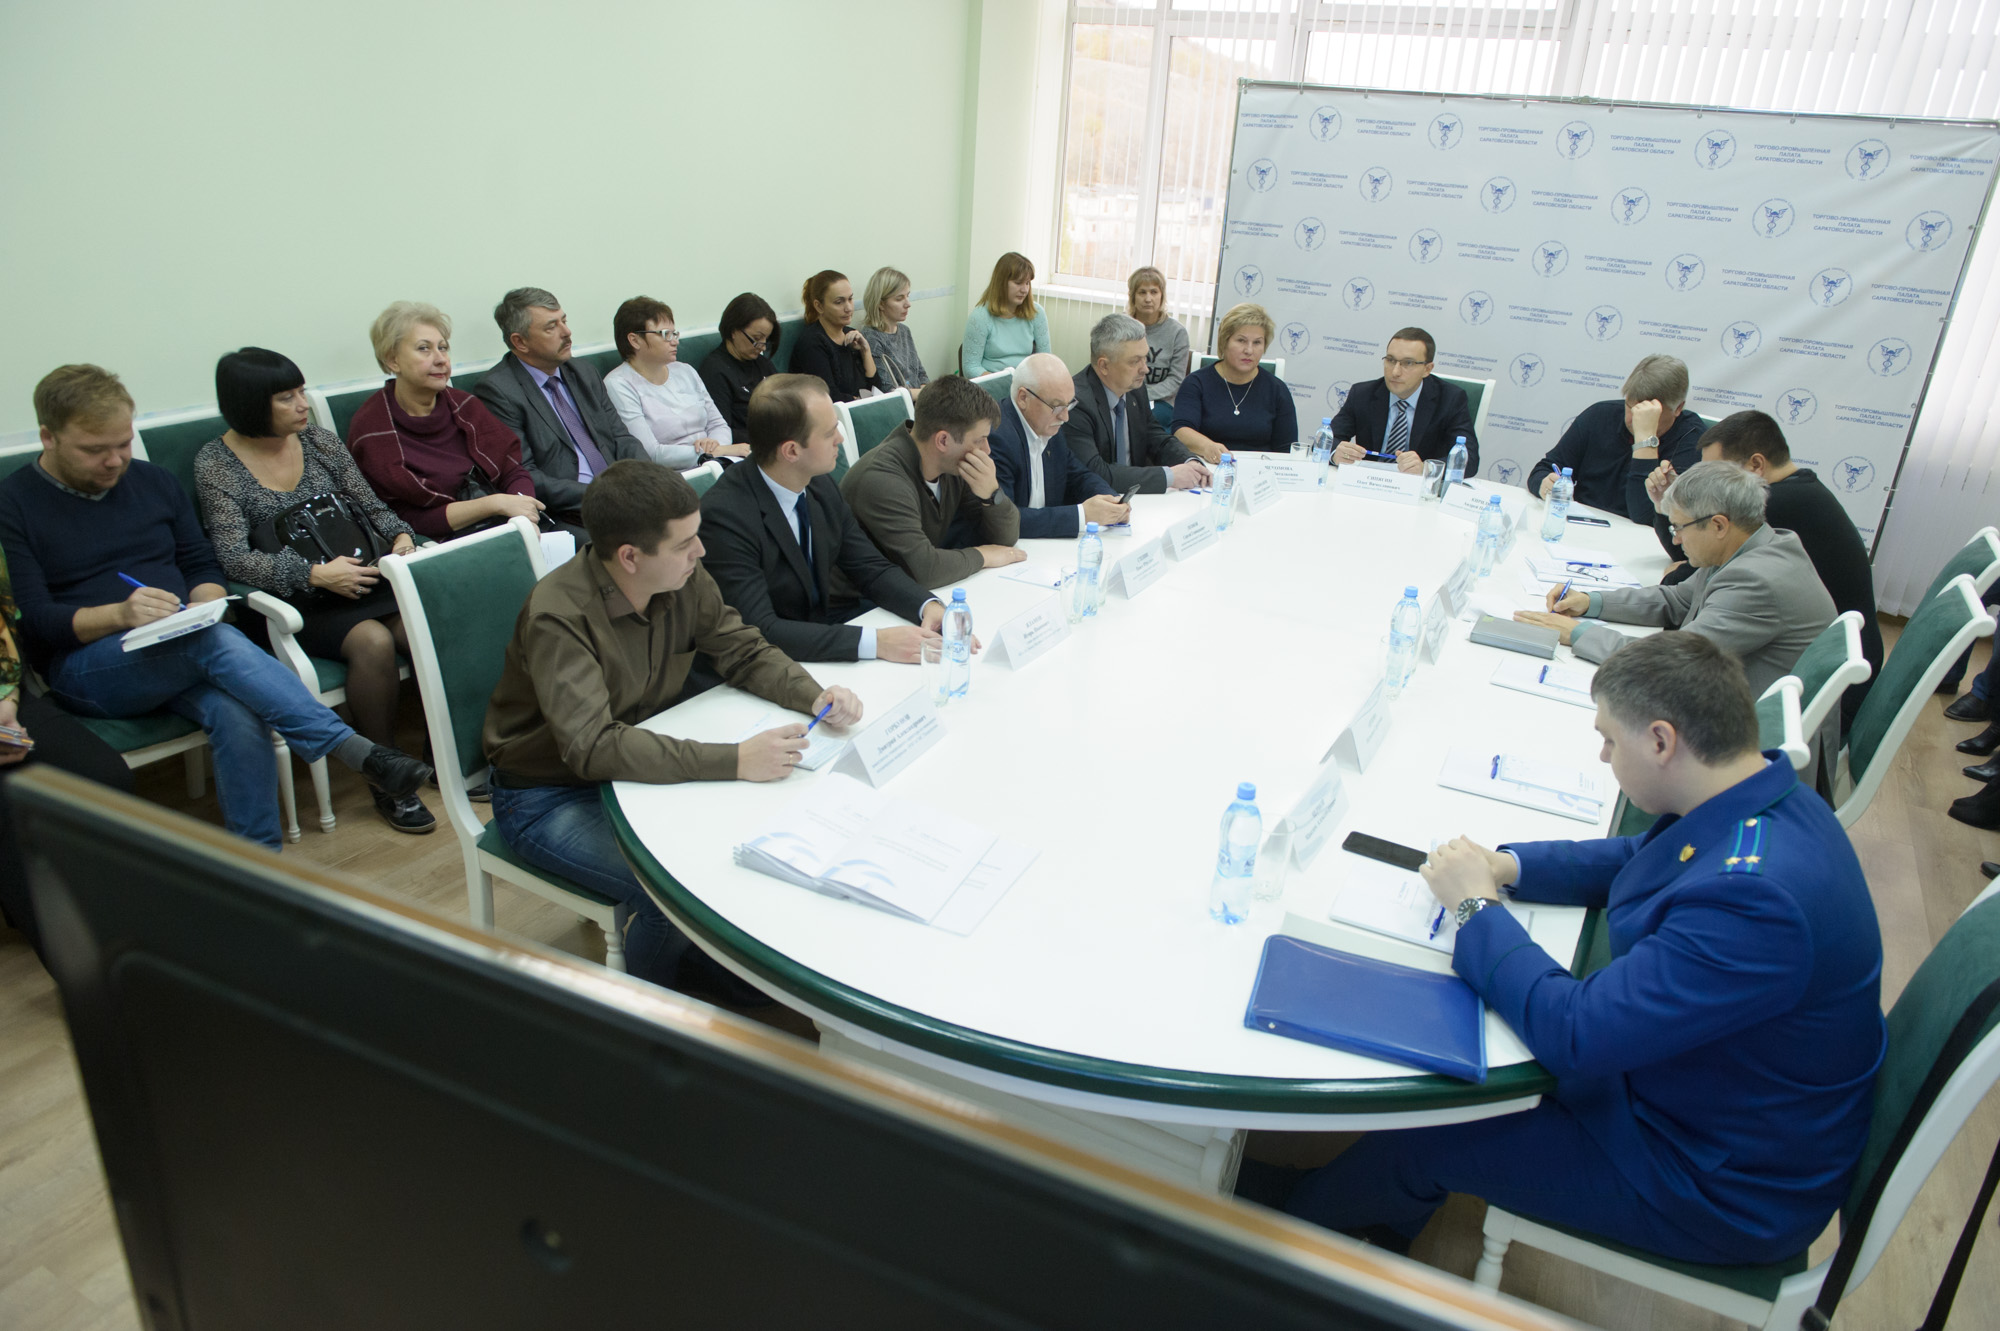  ООО «СМС Технологии» обеспечит медицинским оборудованием 37 больниц саратовской области